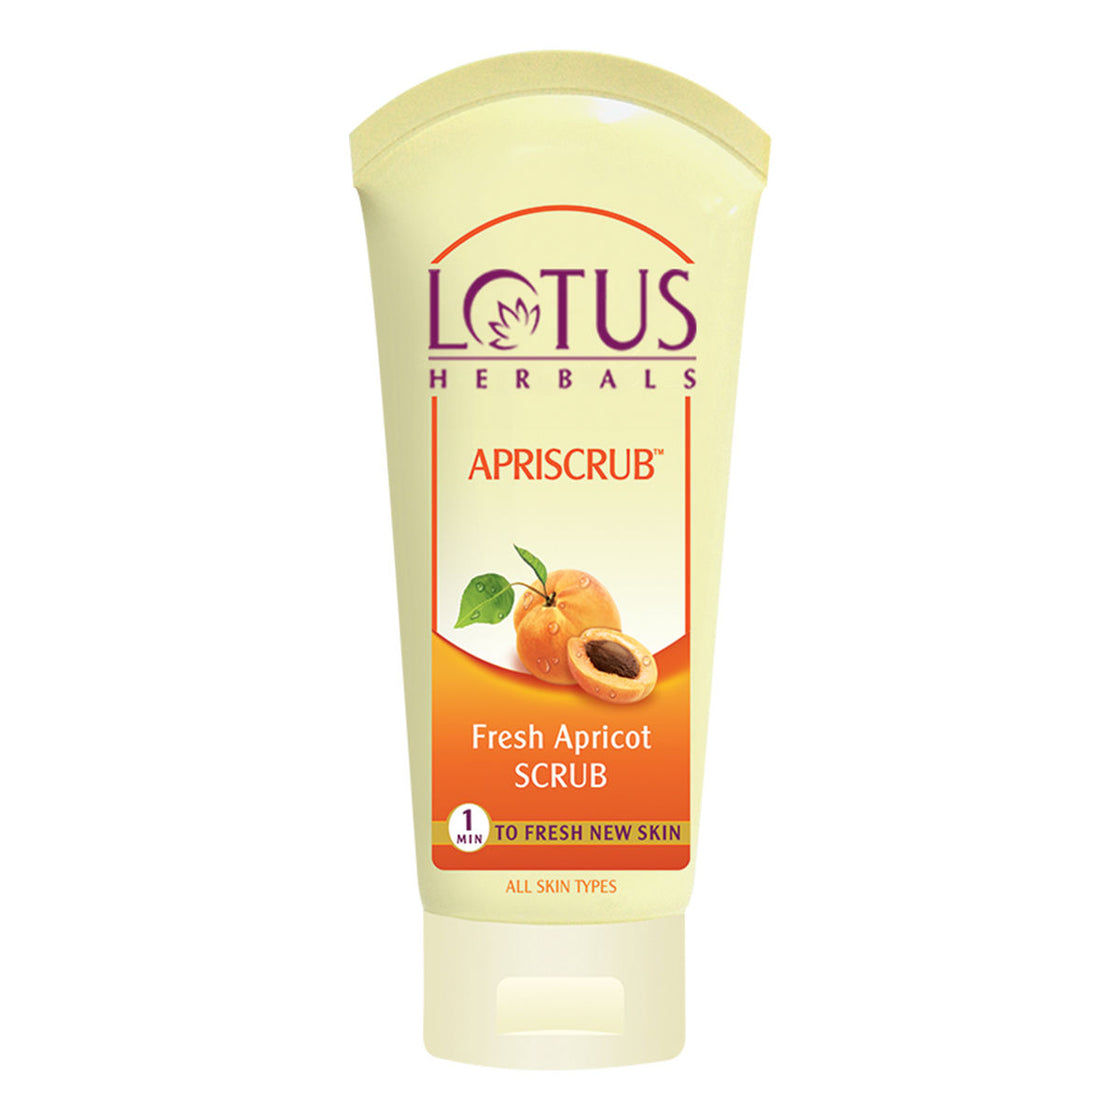 Lotus Herbals Apriscrub Fresh Apricot Scrub (100g)